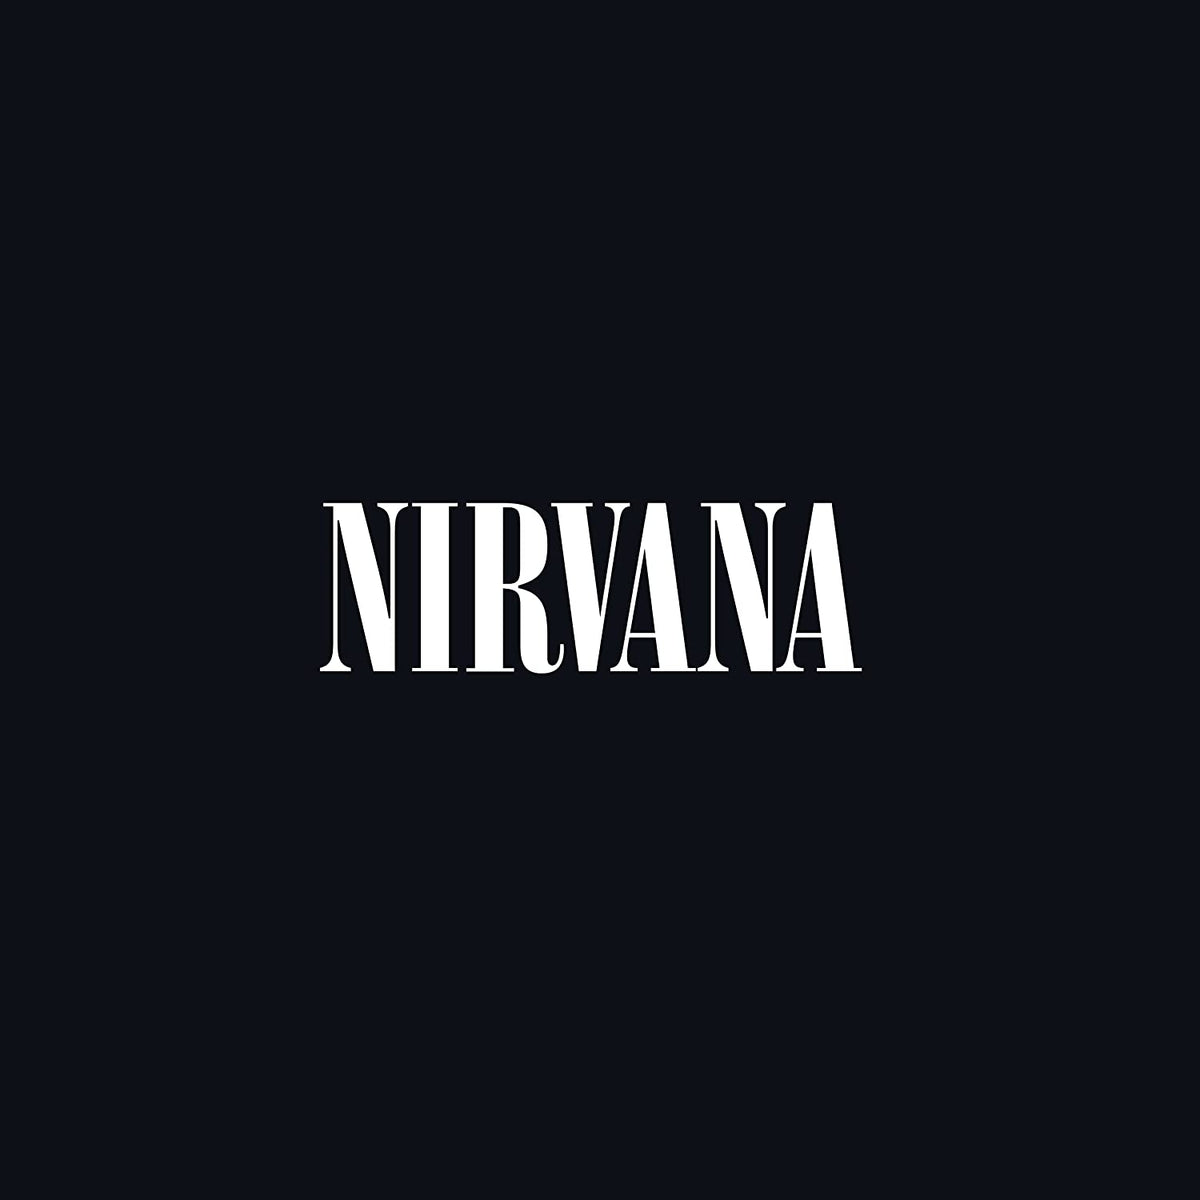 Nirvana - Nirvana [US] - Third Eye